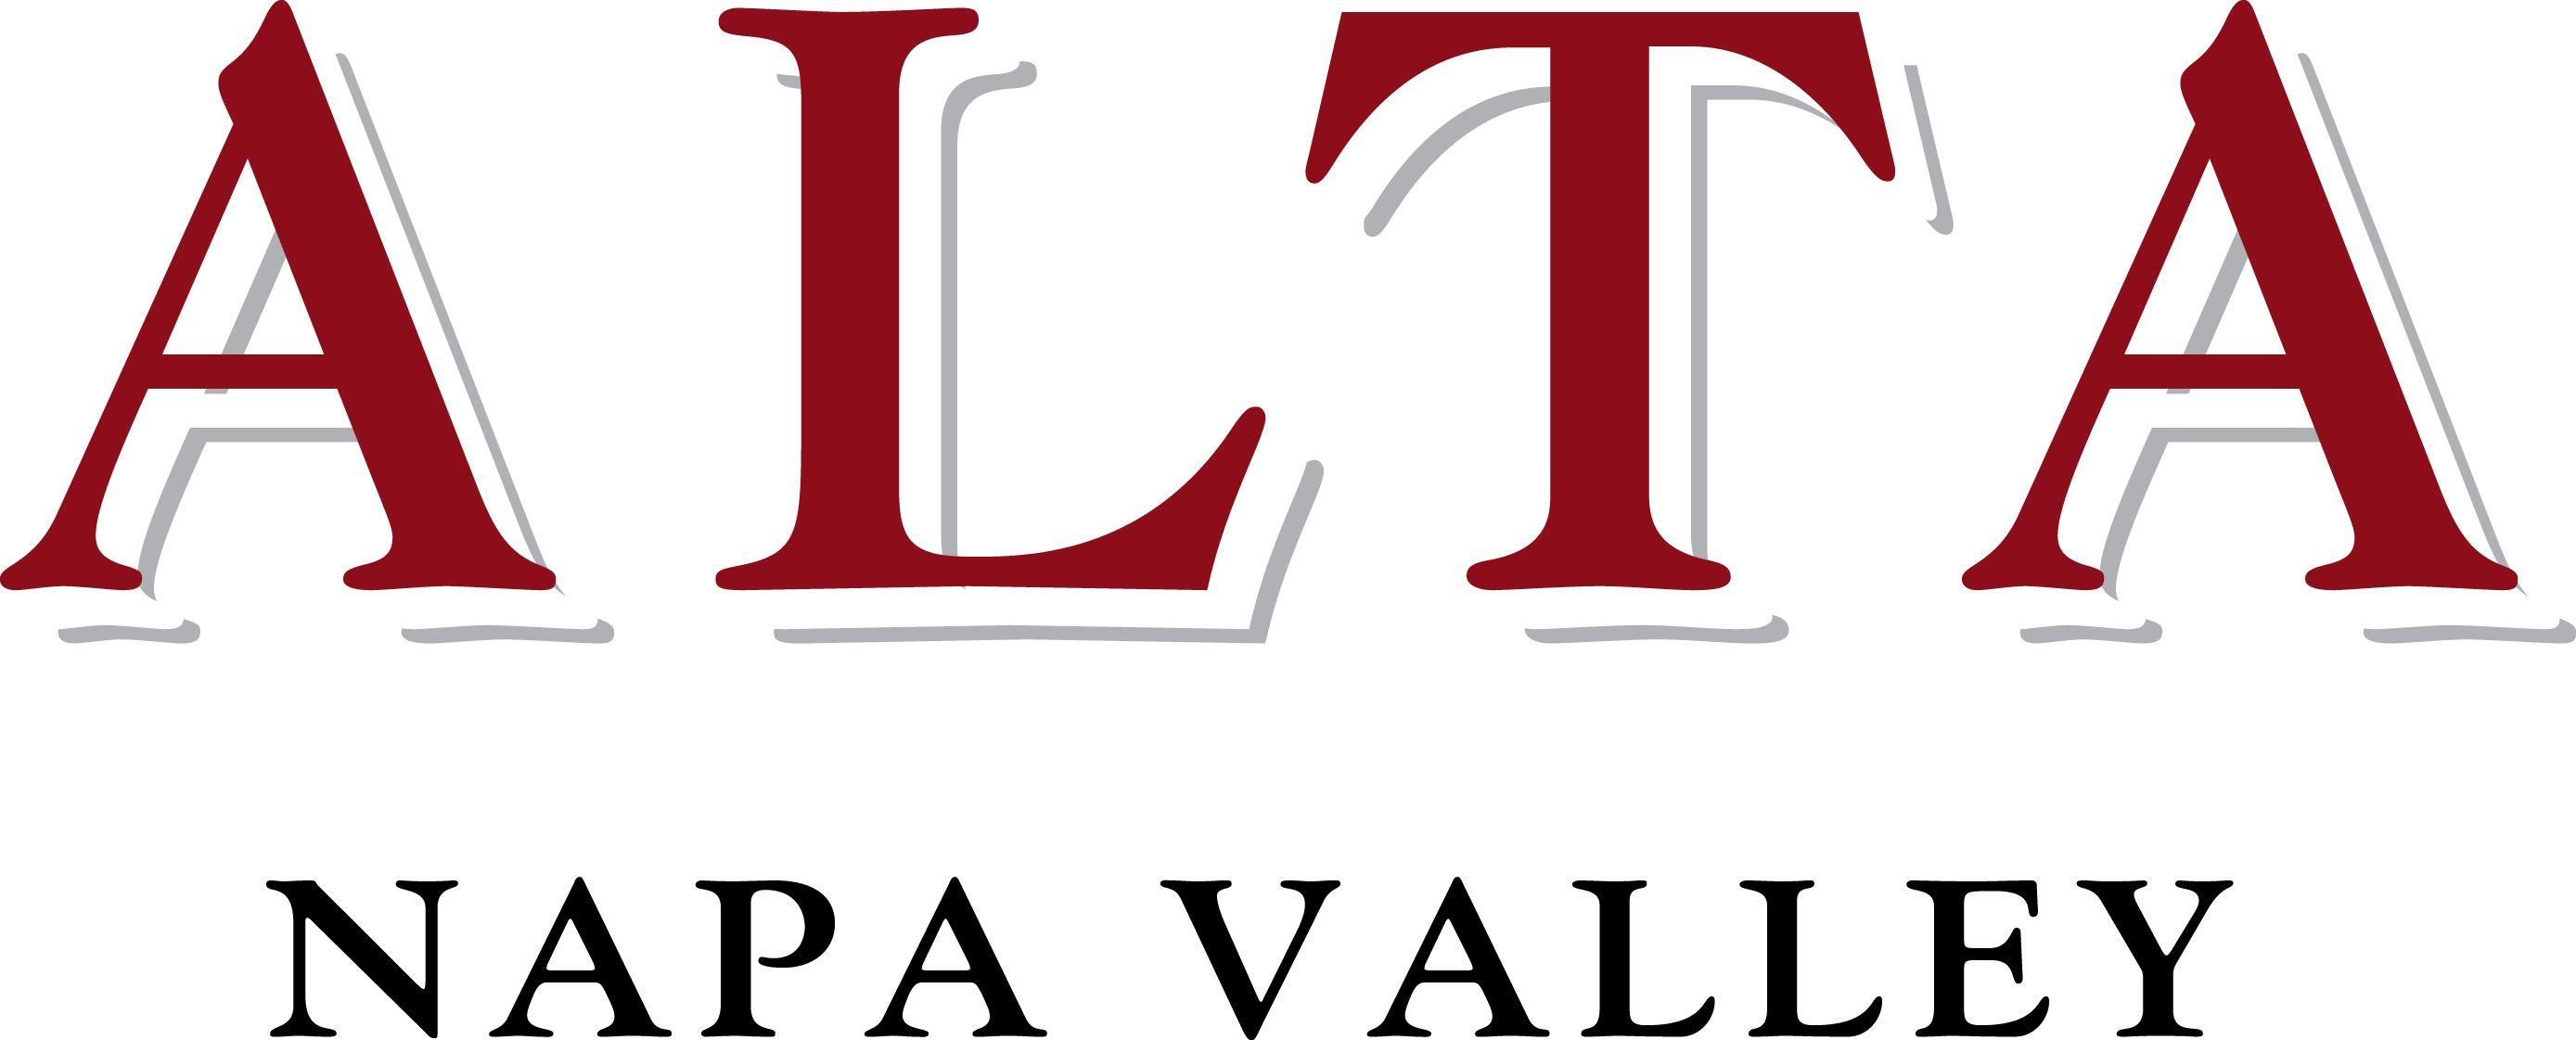 Alta Logo - Alta Napa Valley Winery - Trade